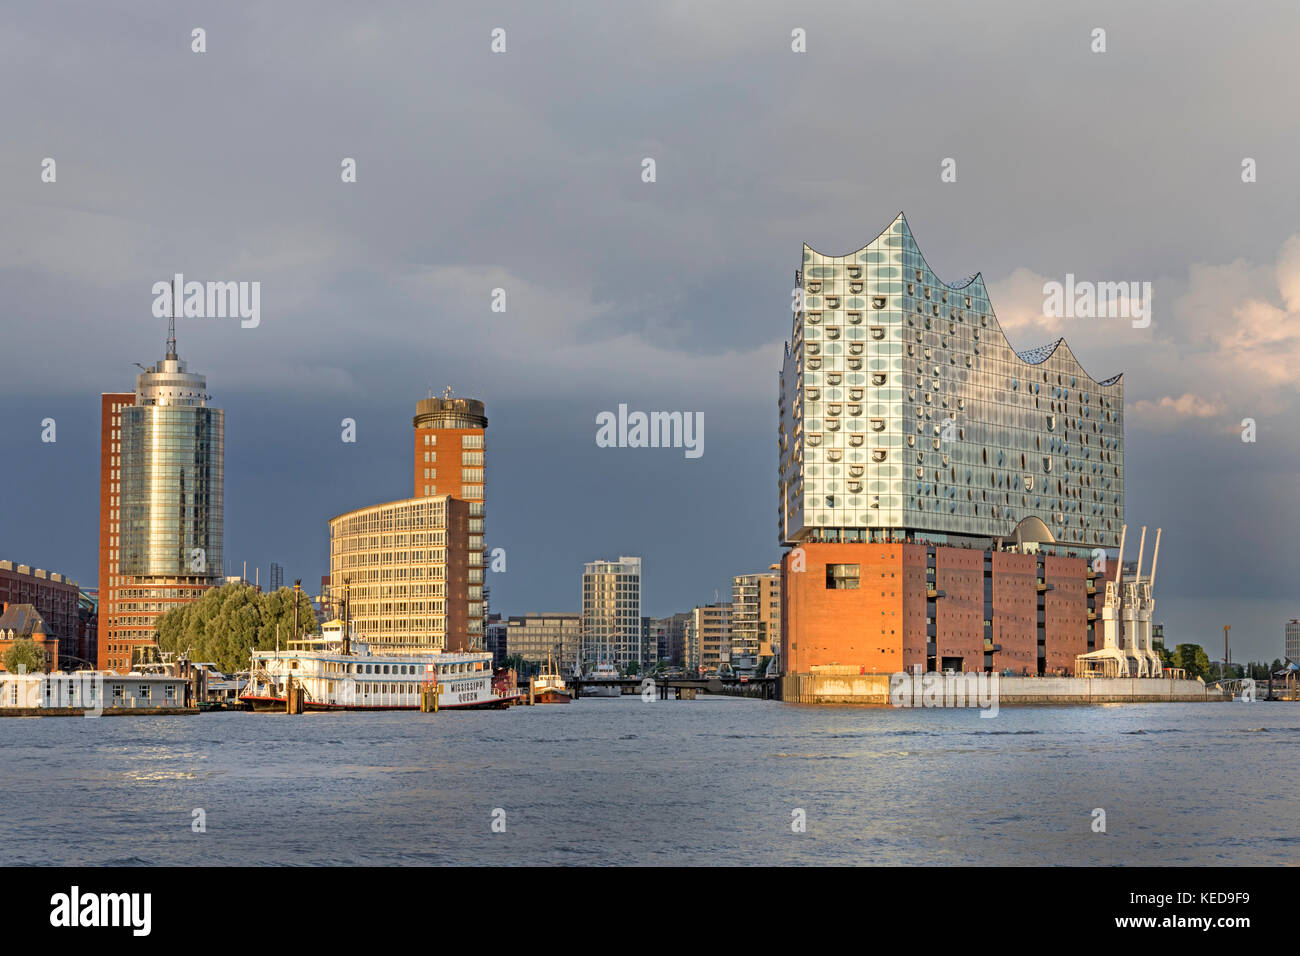 Le port de Hambourg avec le Centre du commerce hanséatique et elbphilharmonie, kehrwiederspitze, hafencity, Hambourg, Allemagne, Europe Banque D'Images